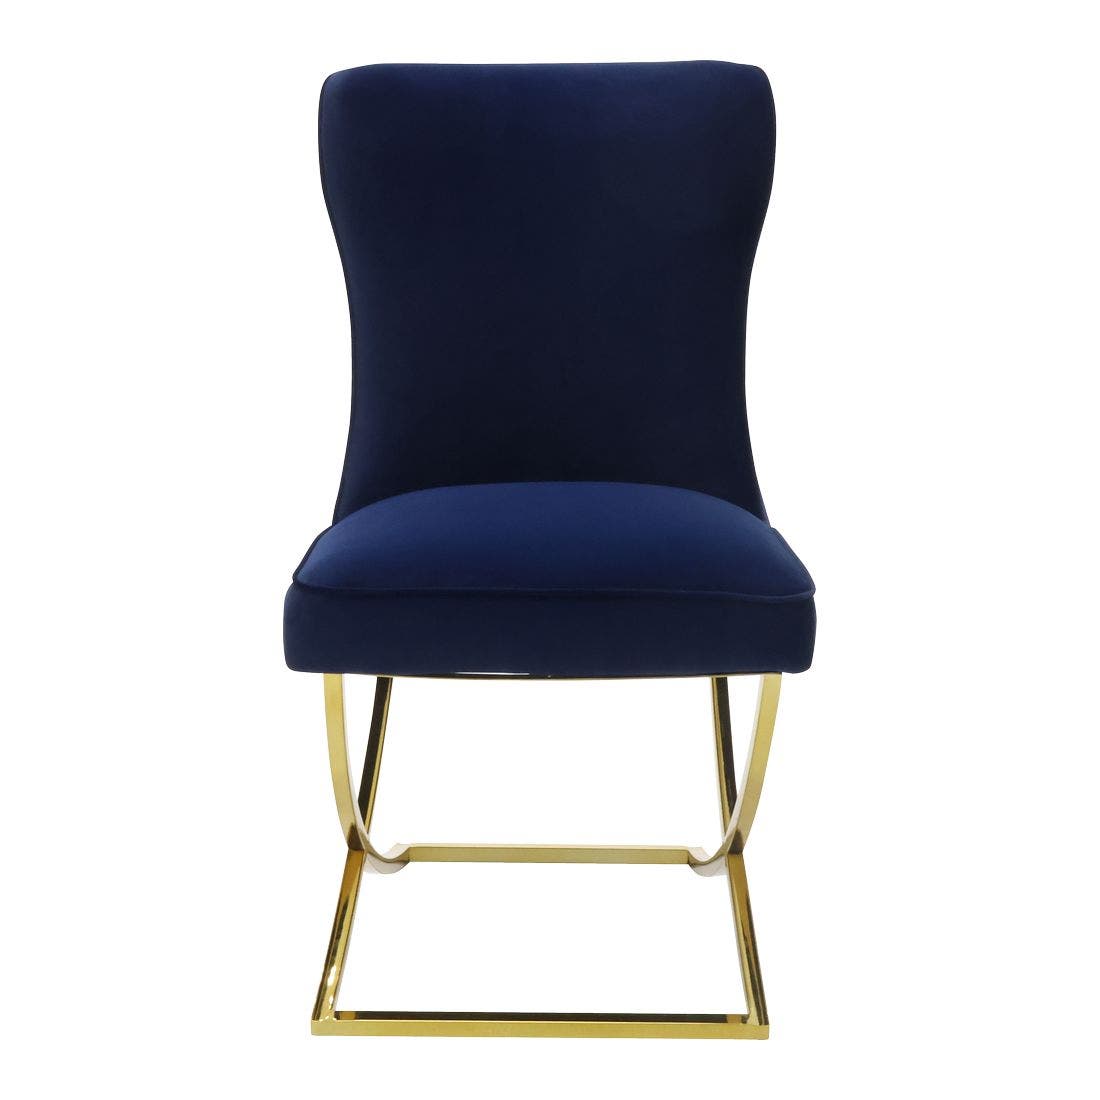 เก้าอี้ รุ่น NADINE สีน้ำเงิน5